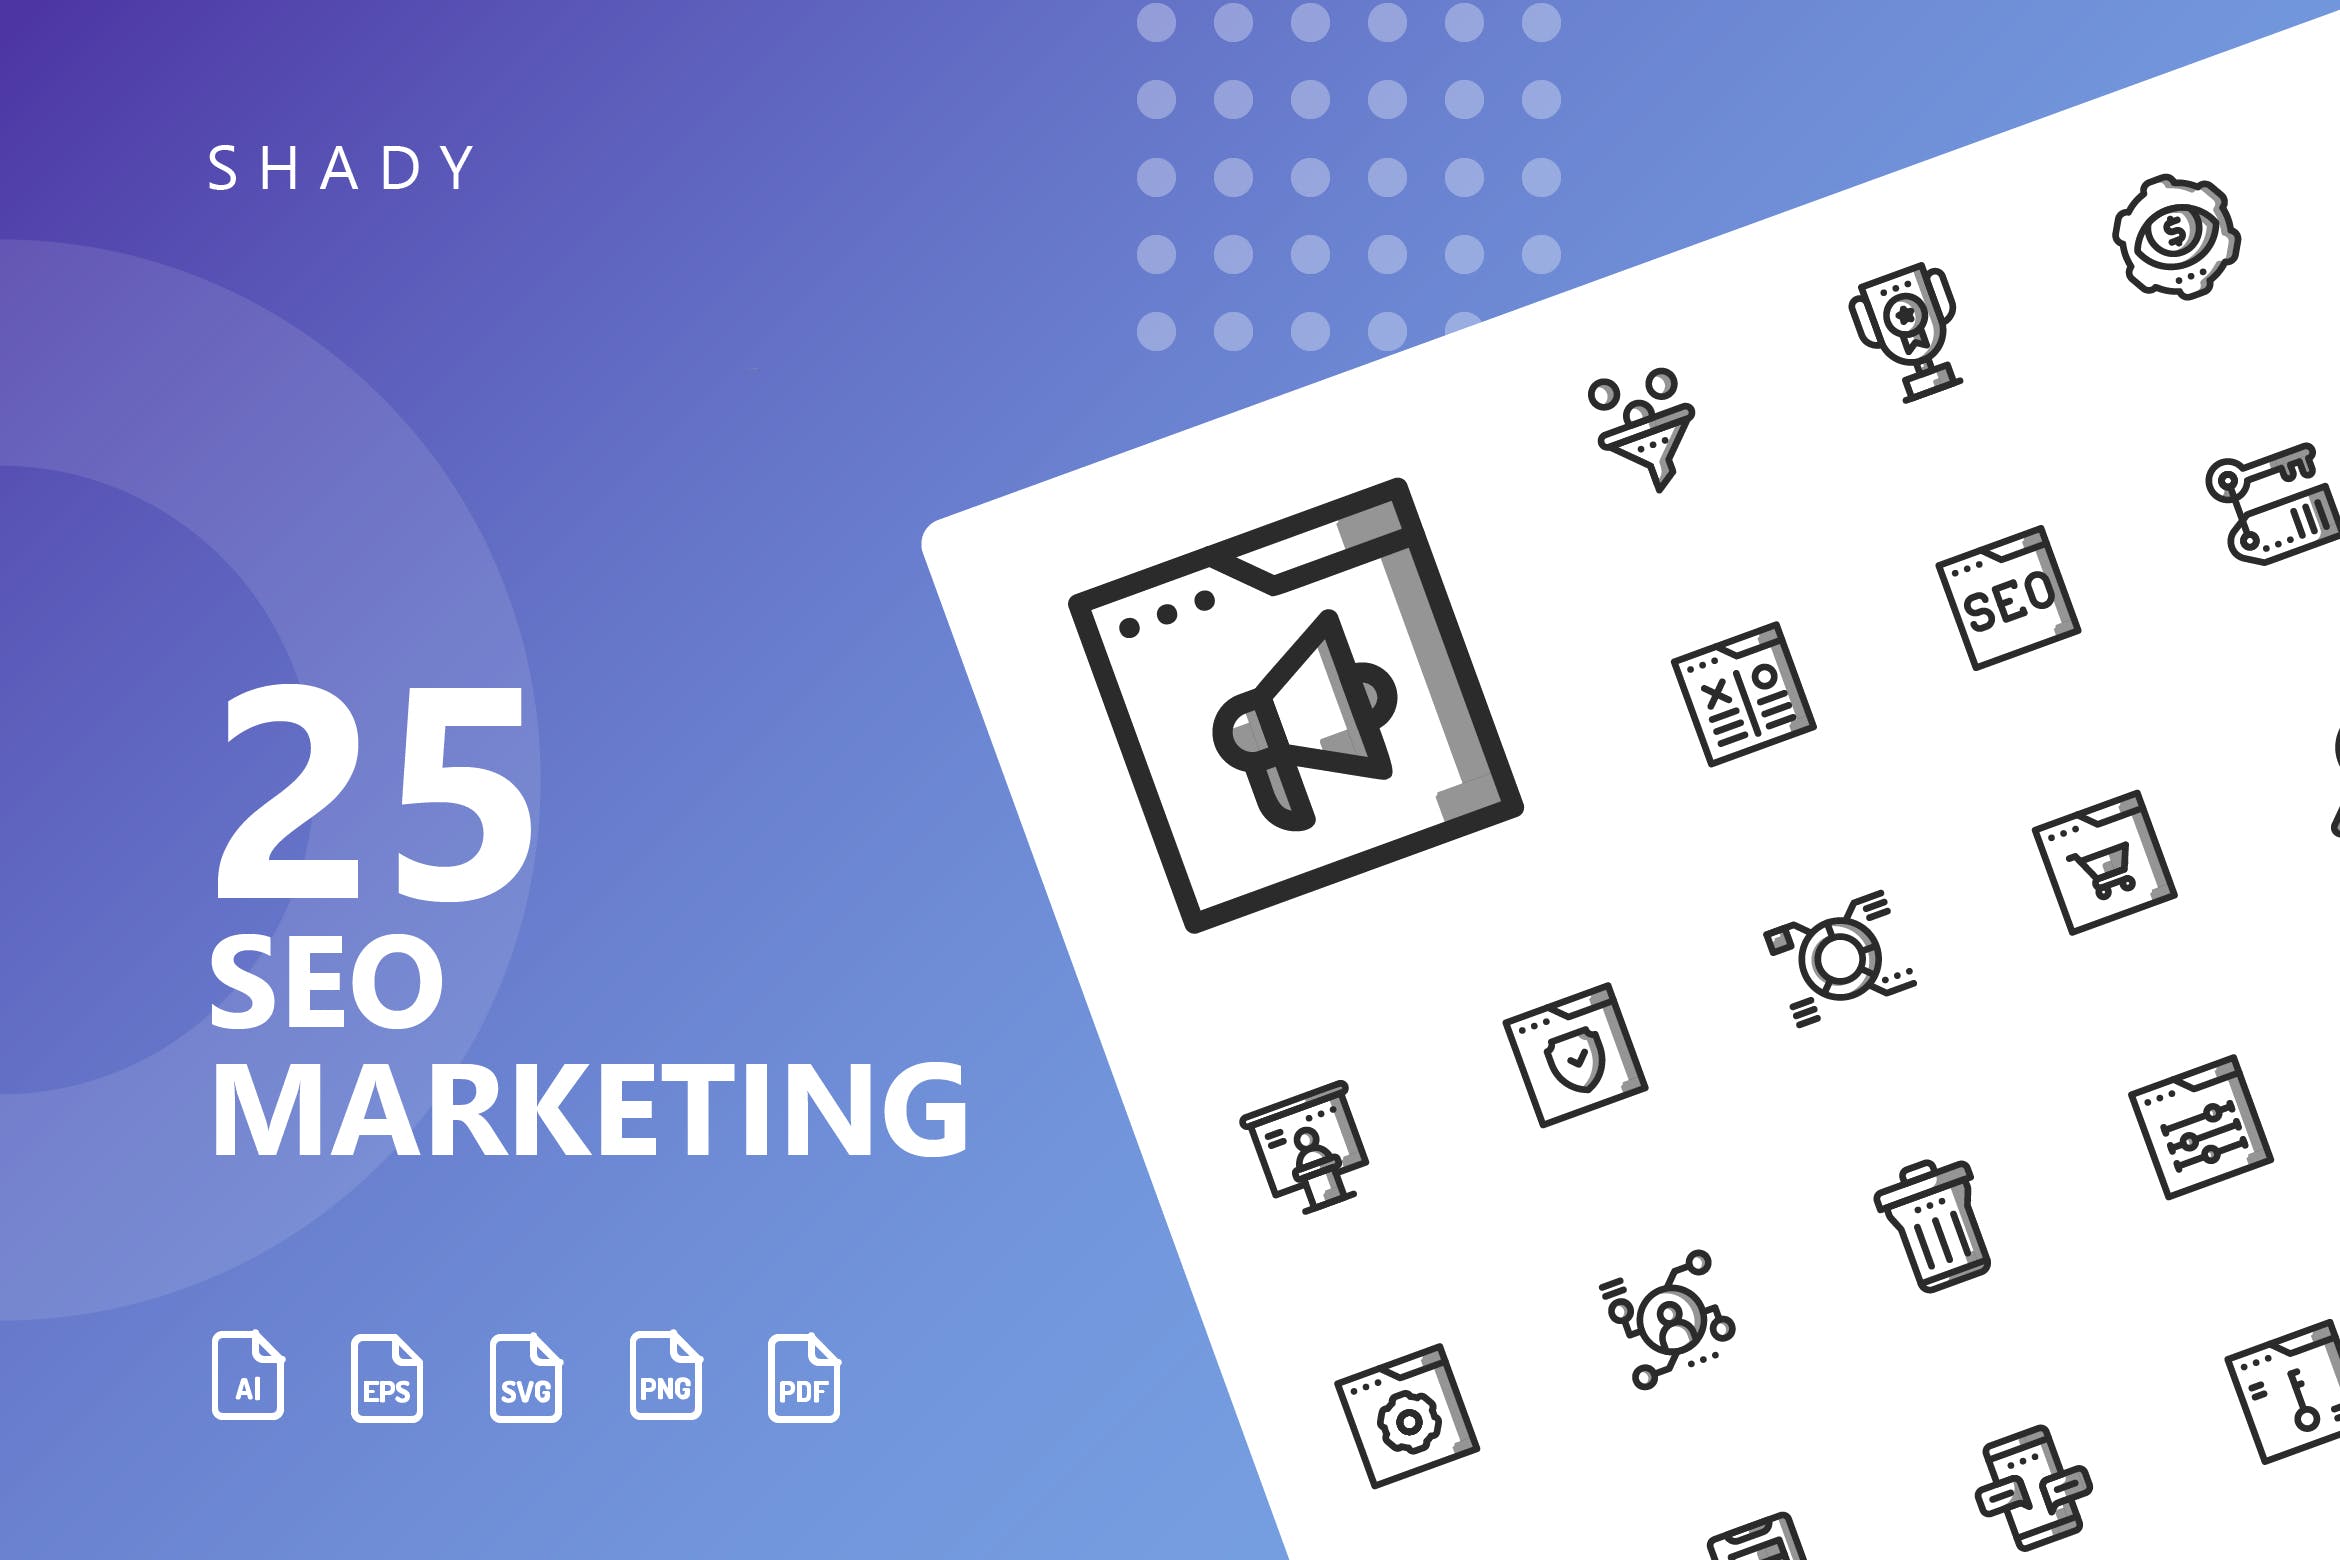 25枚SEO搜索引擎优化营销矢量阴影第一素材精选图标v2 SEO Marketing Shady Icons插图